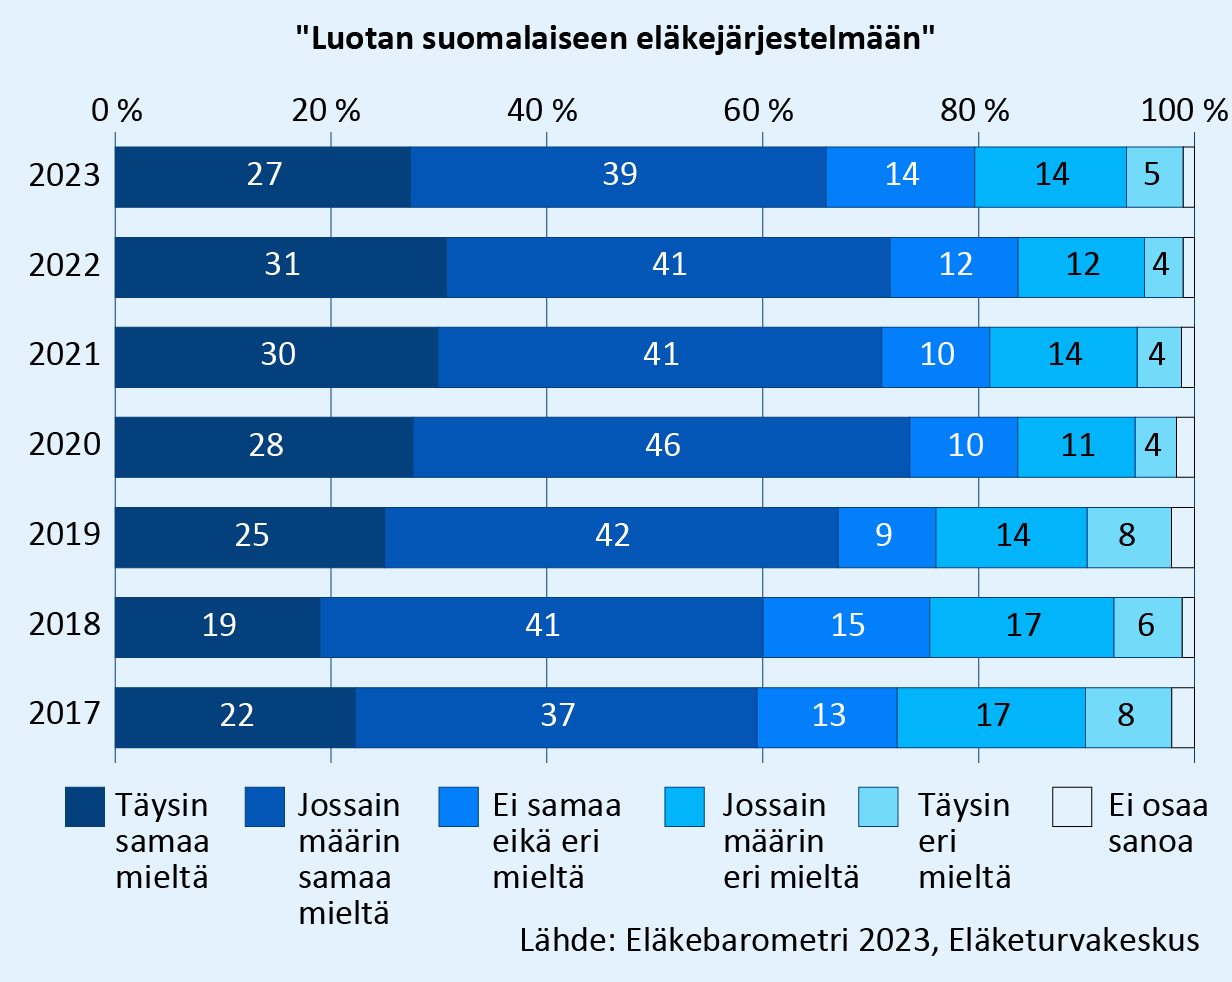 Väittämä: Luotan suomalaiseen eläkejärjestelmään. Vastaukset vuosina 2017–2023. Kriittisesti eläkejärjestelmään suhtautuvien osuus on laskenut 25 %:sta 19 %:iin seitsemän vuoden aikana. Kun taas myönteisesti suhtautuvien osuus nousi 59 %:sta 66 %:iin. Lähde: Eläkebarometri 2023, Eläketurvakeskus.